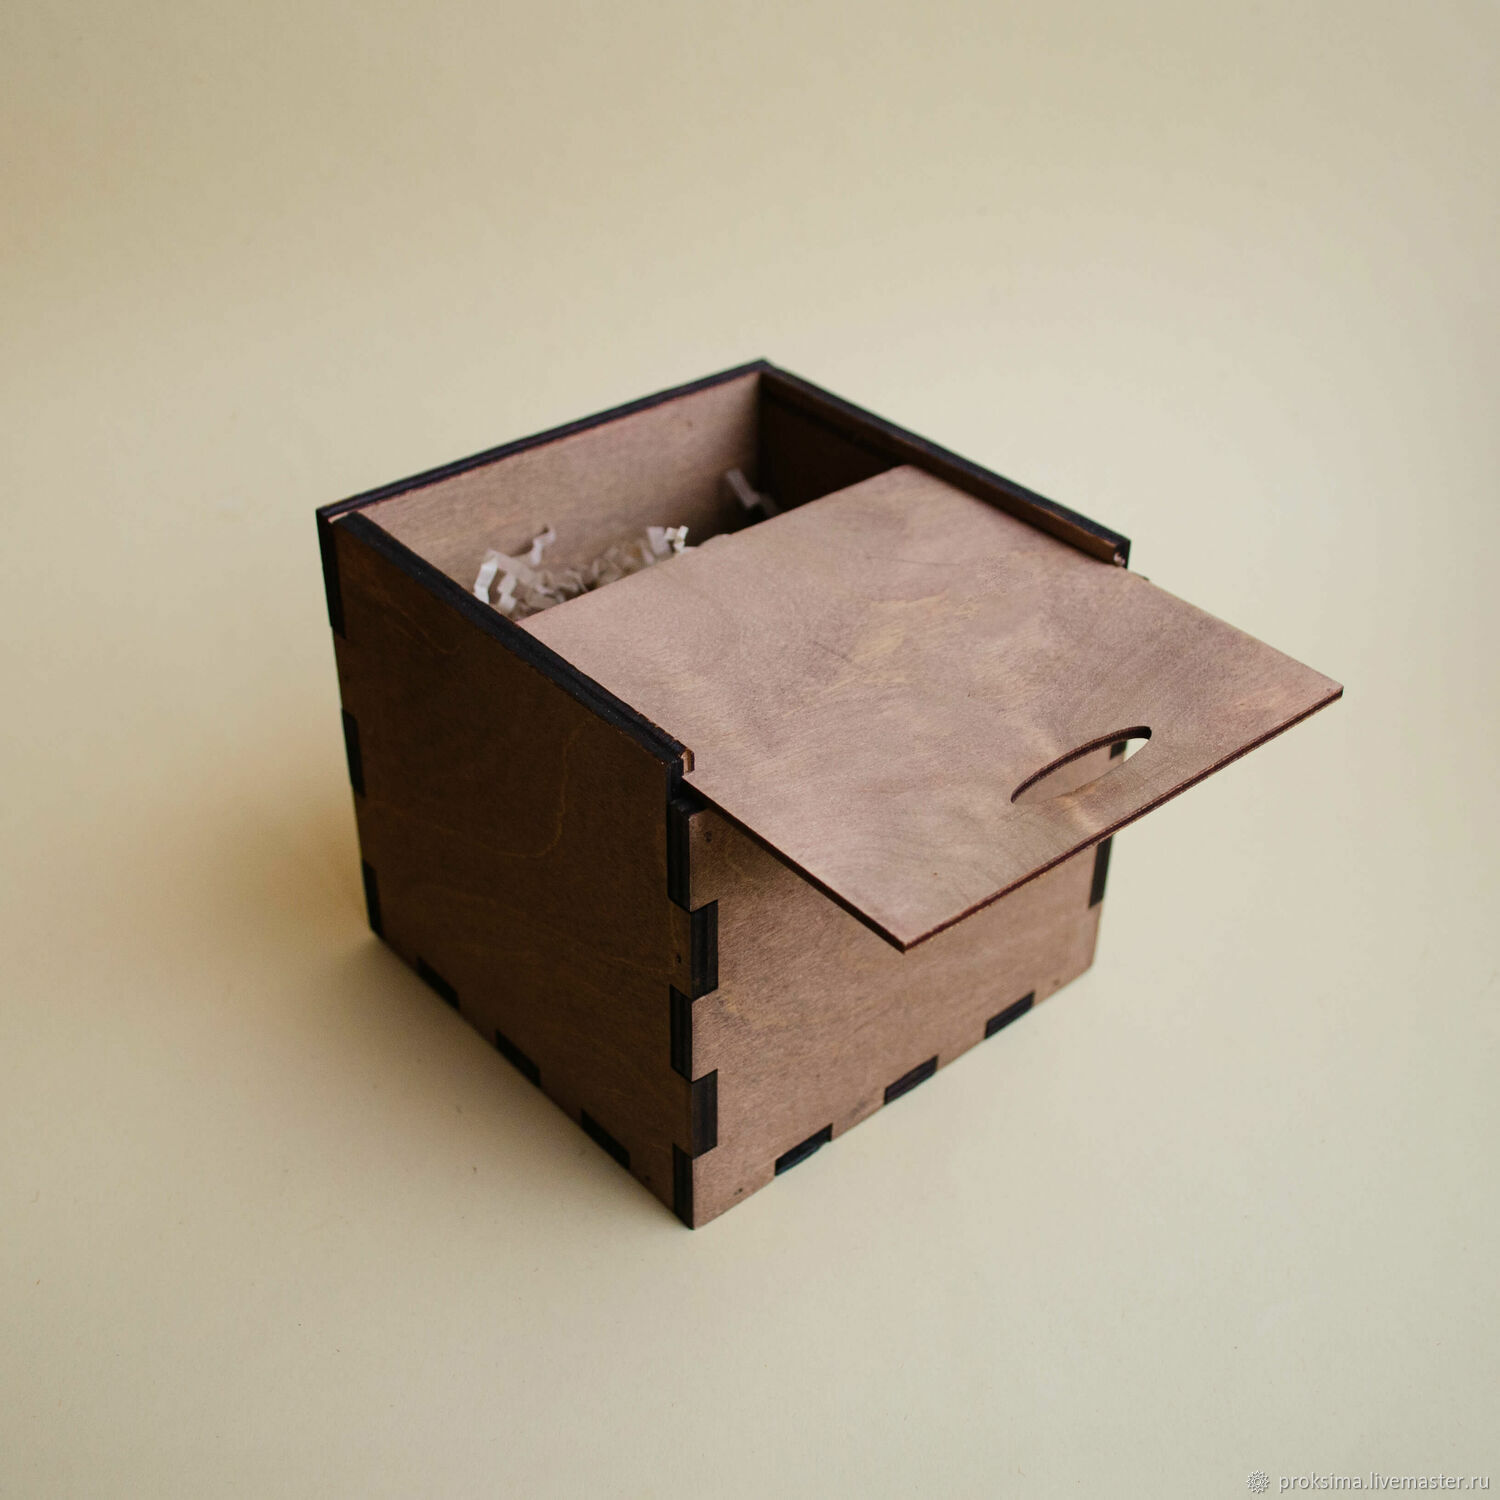 Коробочка с выдвижной крышкой, фанера, 13х21х7 см